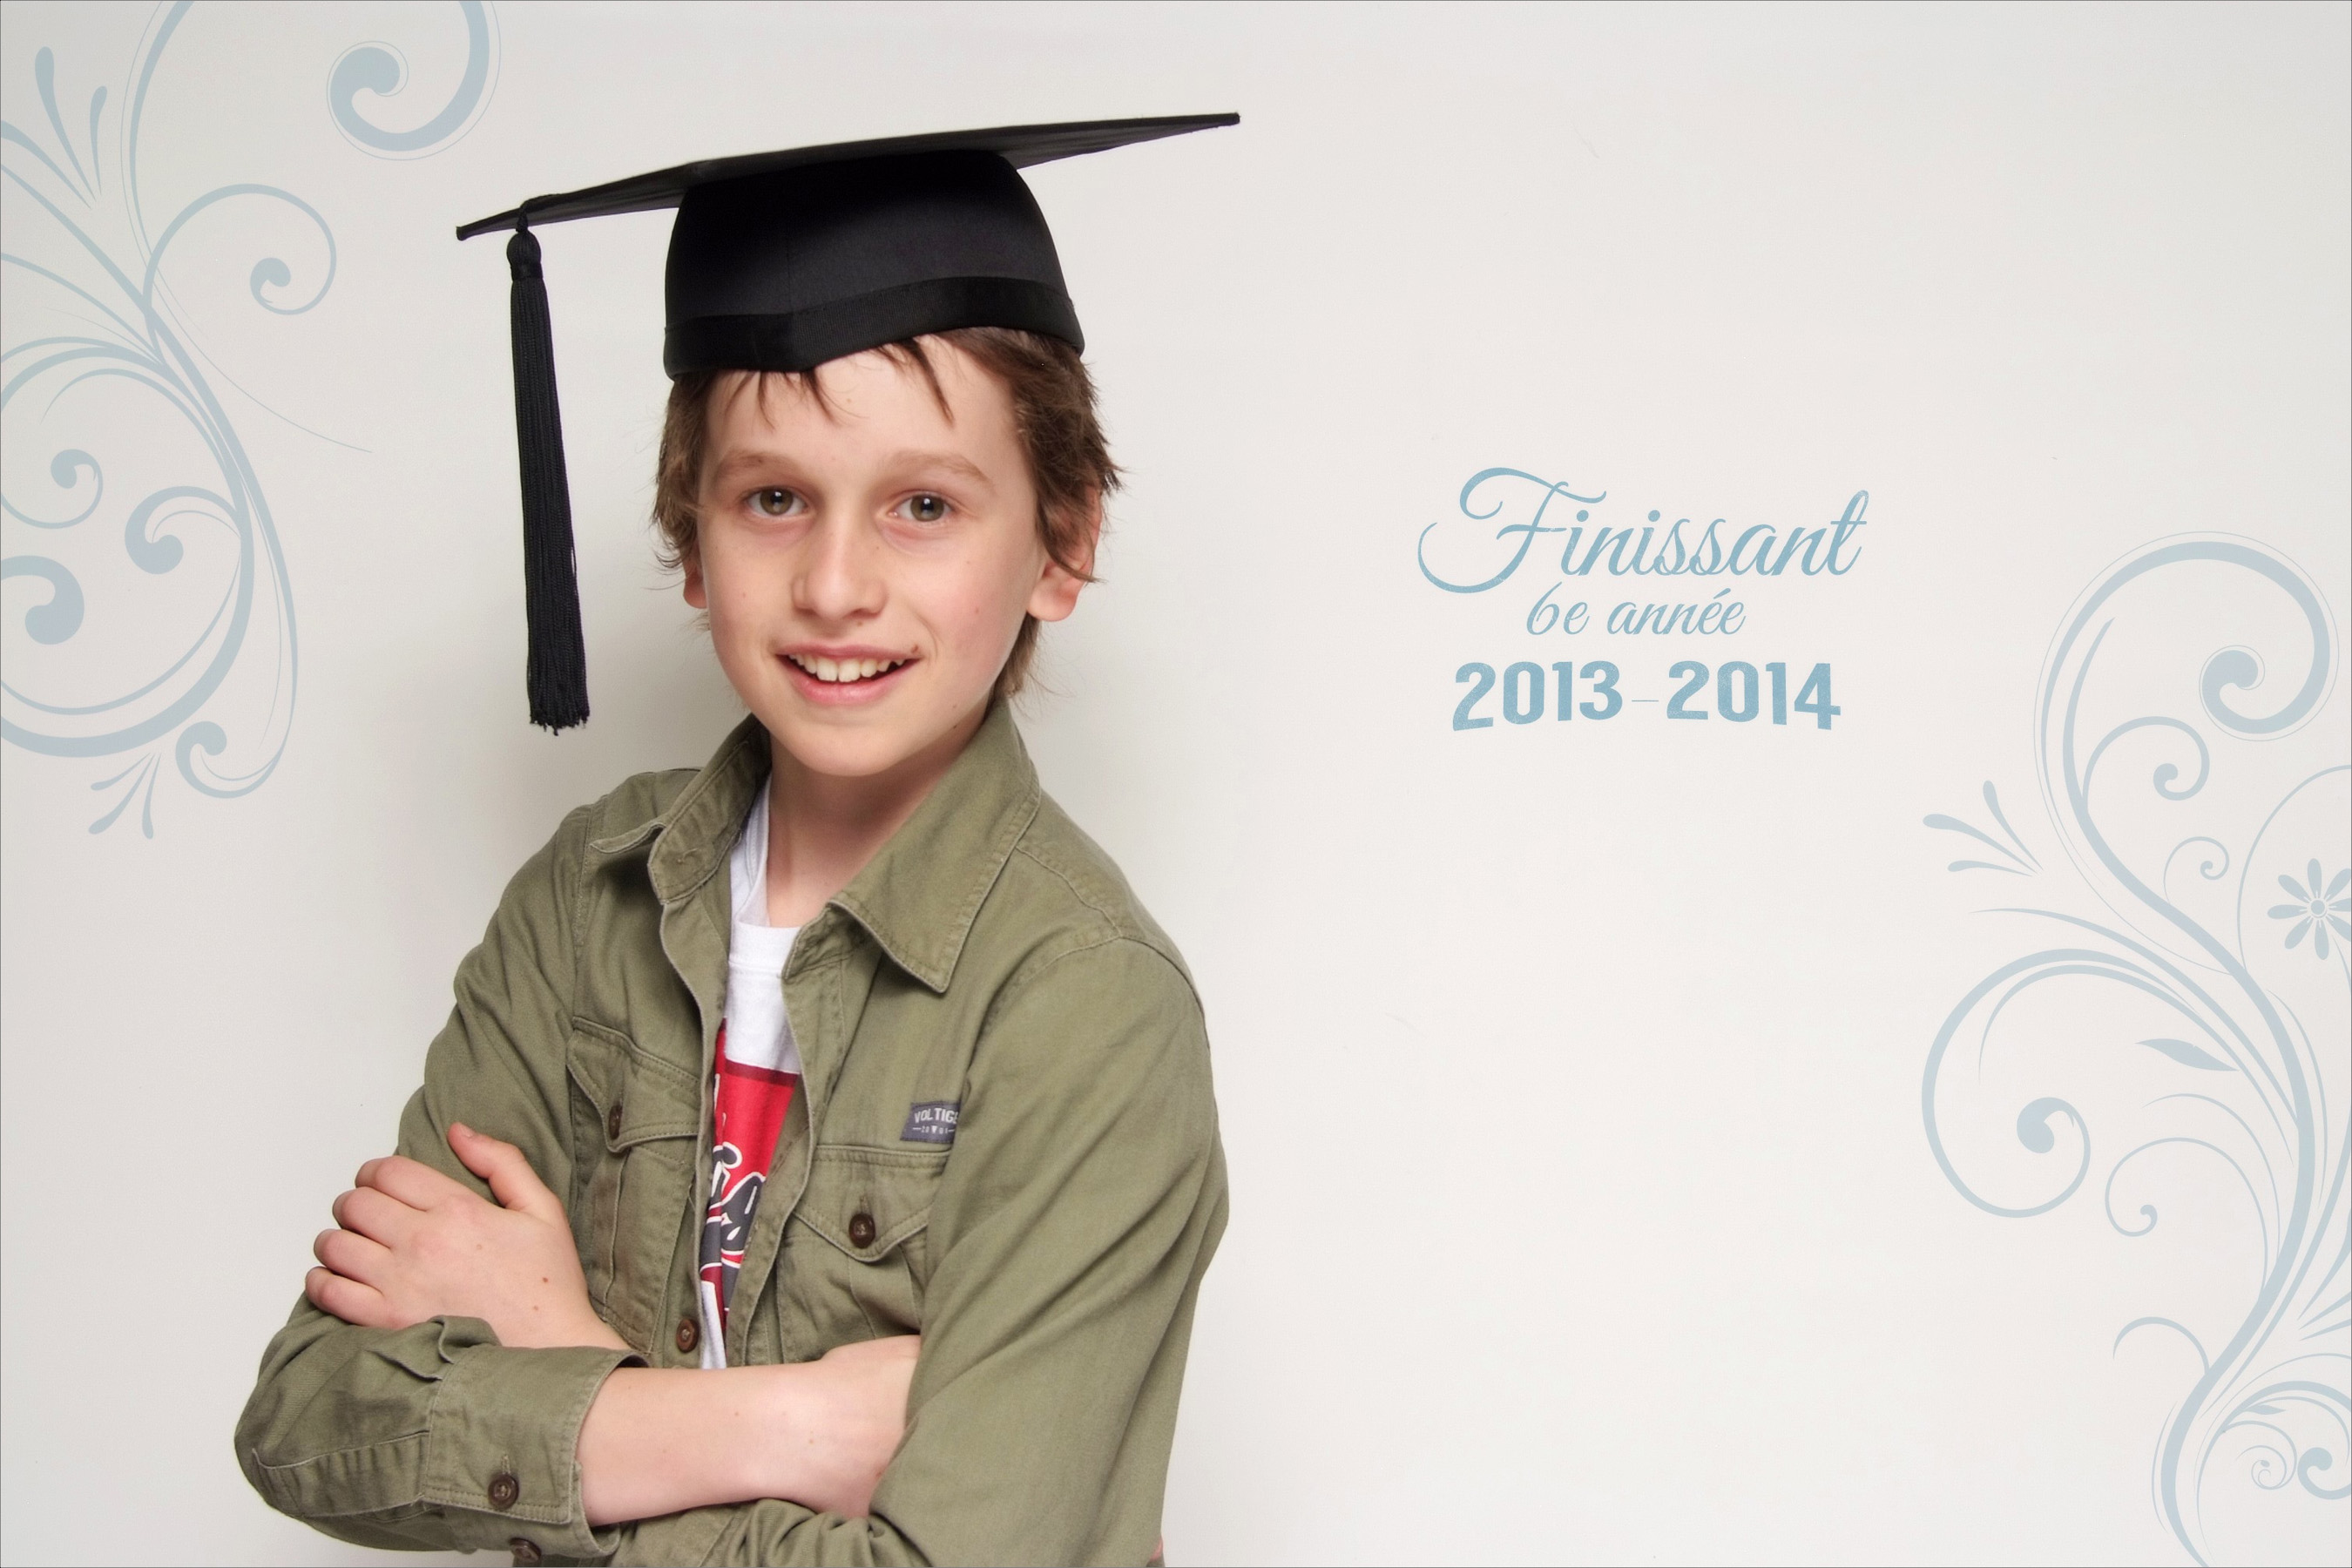 Juin 2014: Graduation